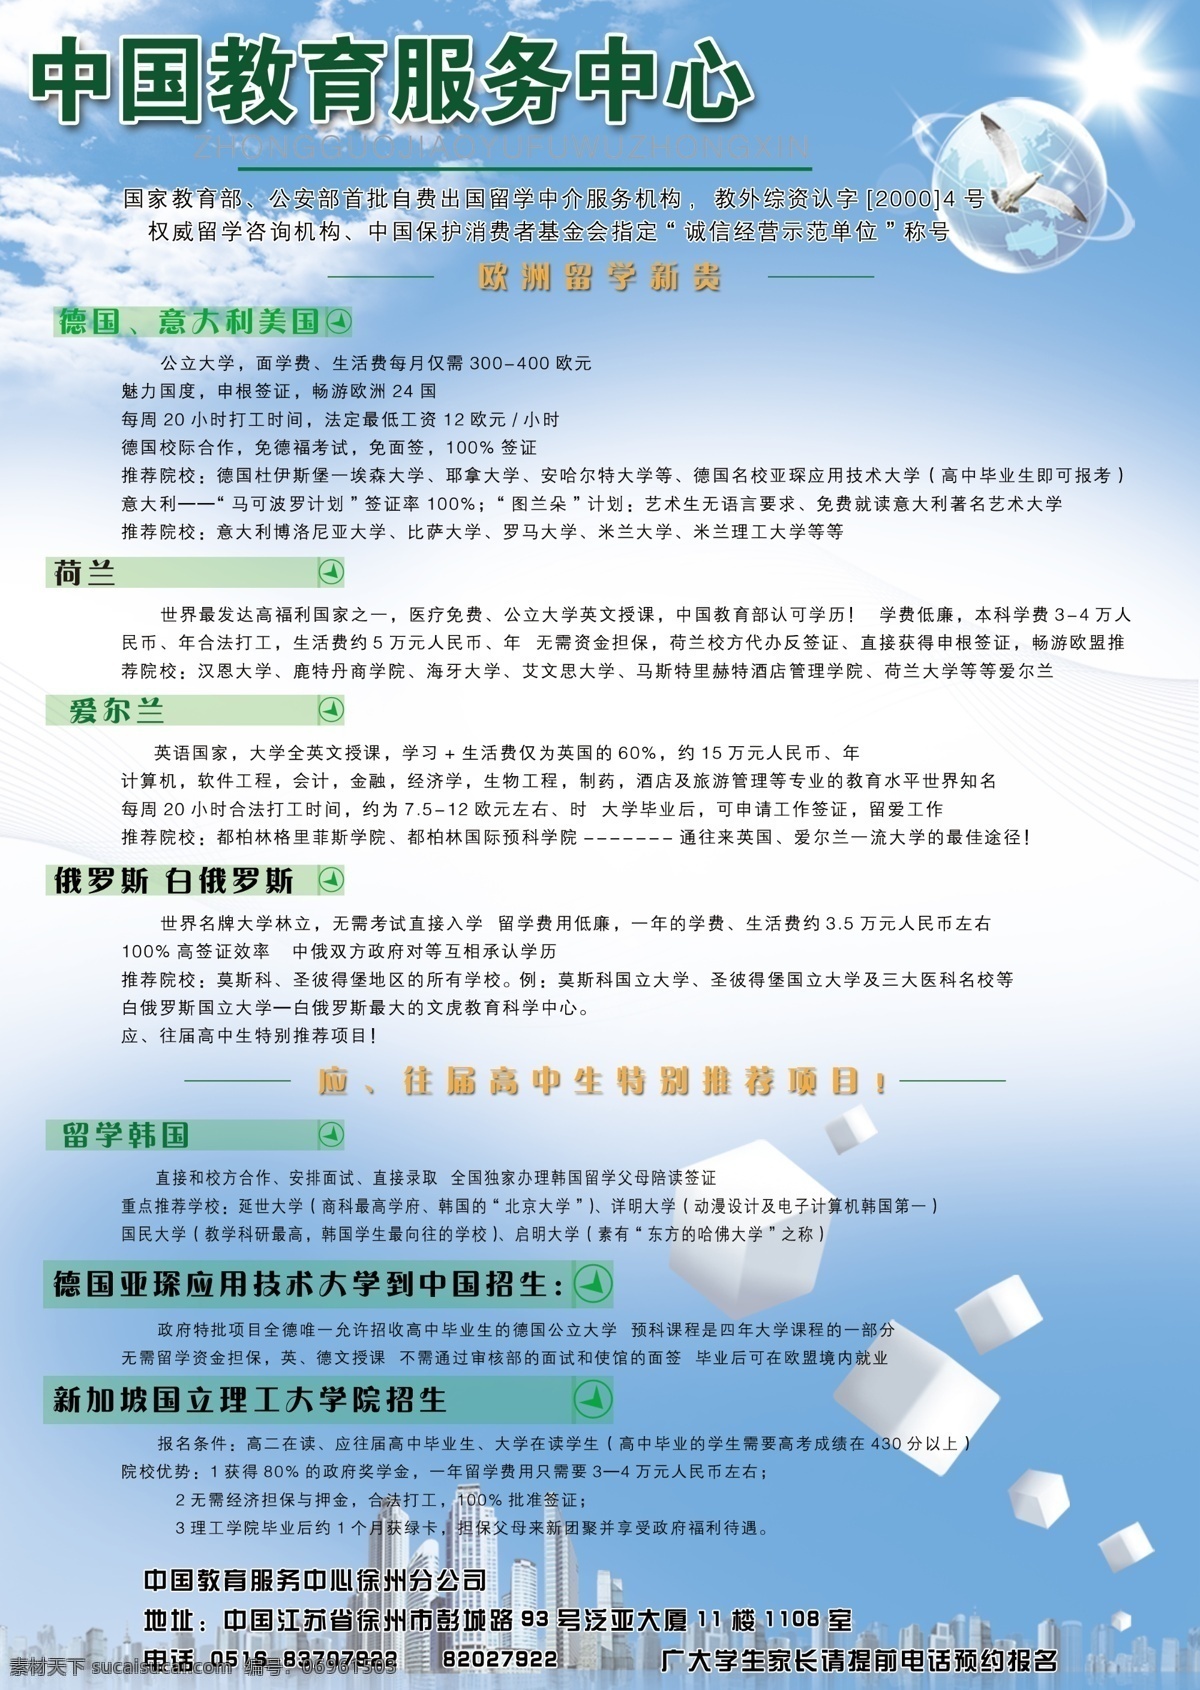 dm宣传单 广告设计模板 宣传单 源文件 招生海报 招生宣传单 招生 模板下载 中国教育服务中心 出国留学招生 其他海报设计